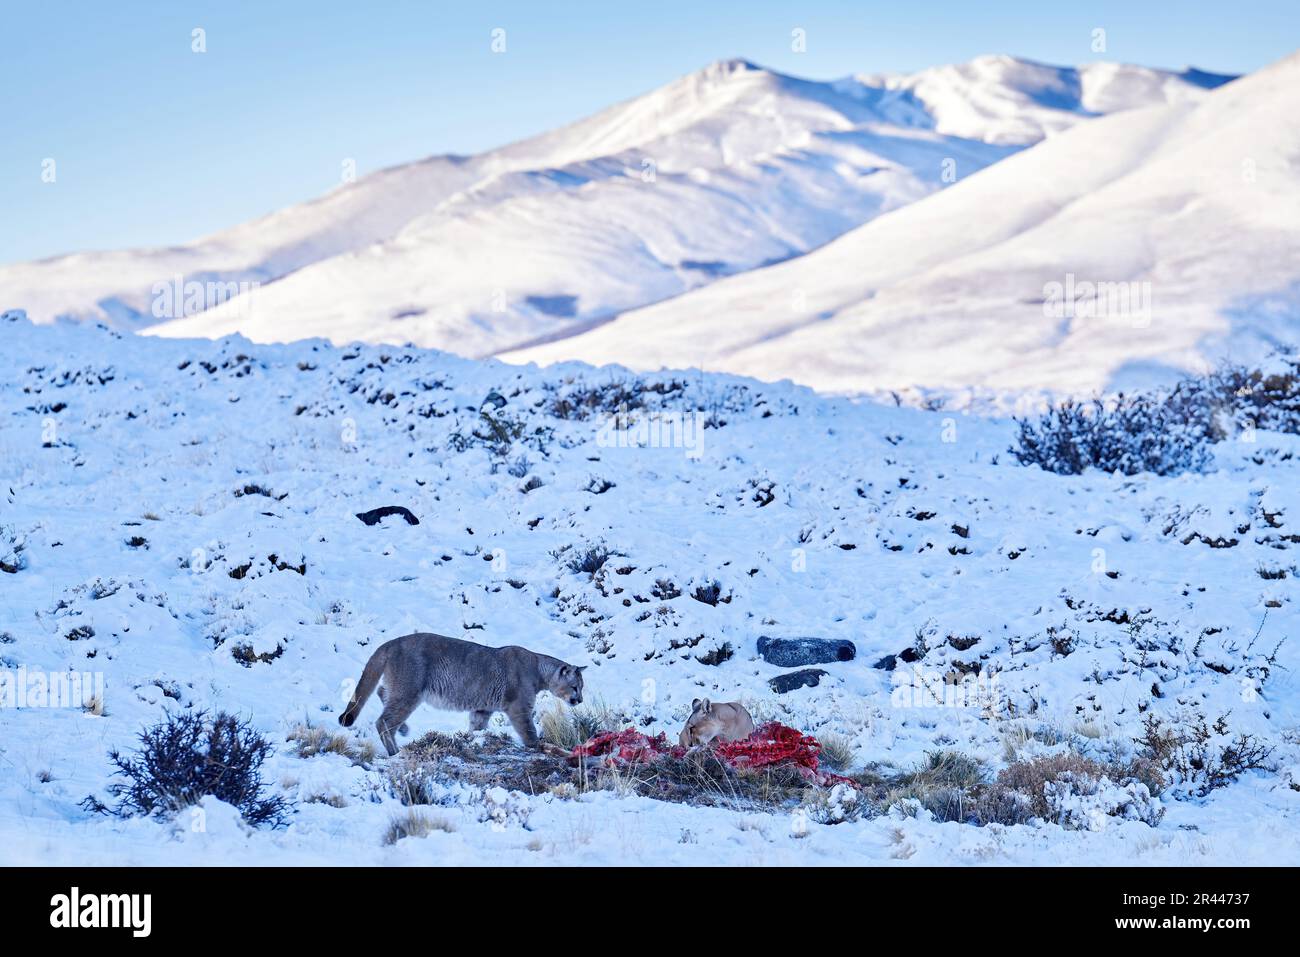 Puma mangeant guancao carcasse, squelette dans la bouche muzzle avec langue. Parc national de Torres del Paine au Chili. Hiver avec neige. Mère avec Banque D'Images